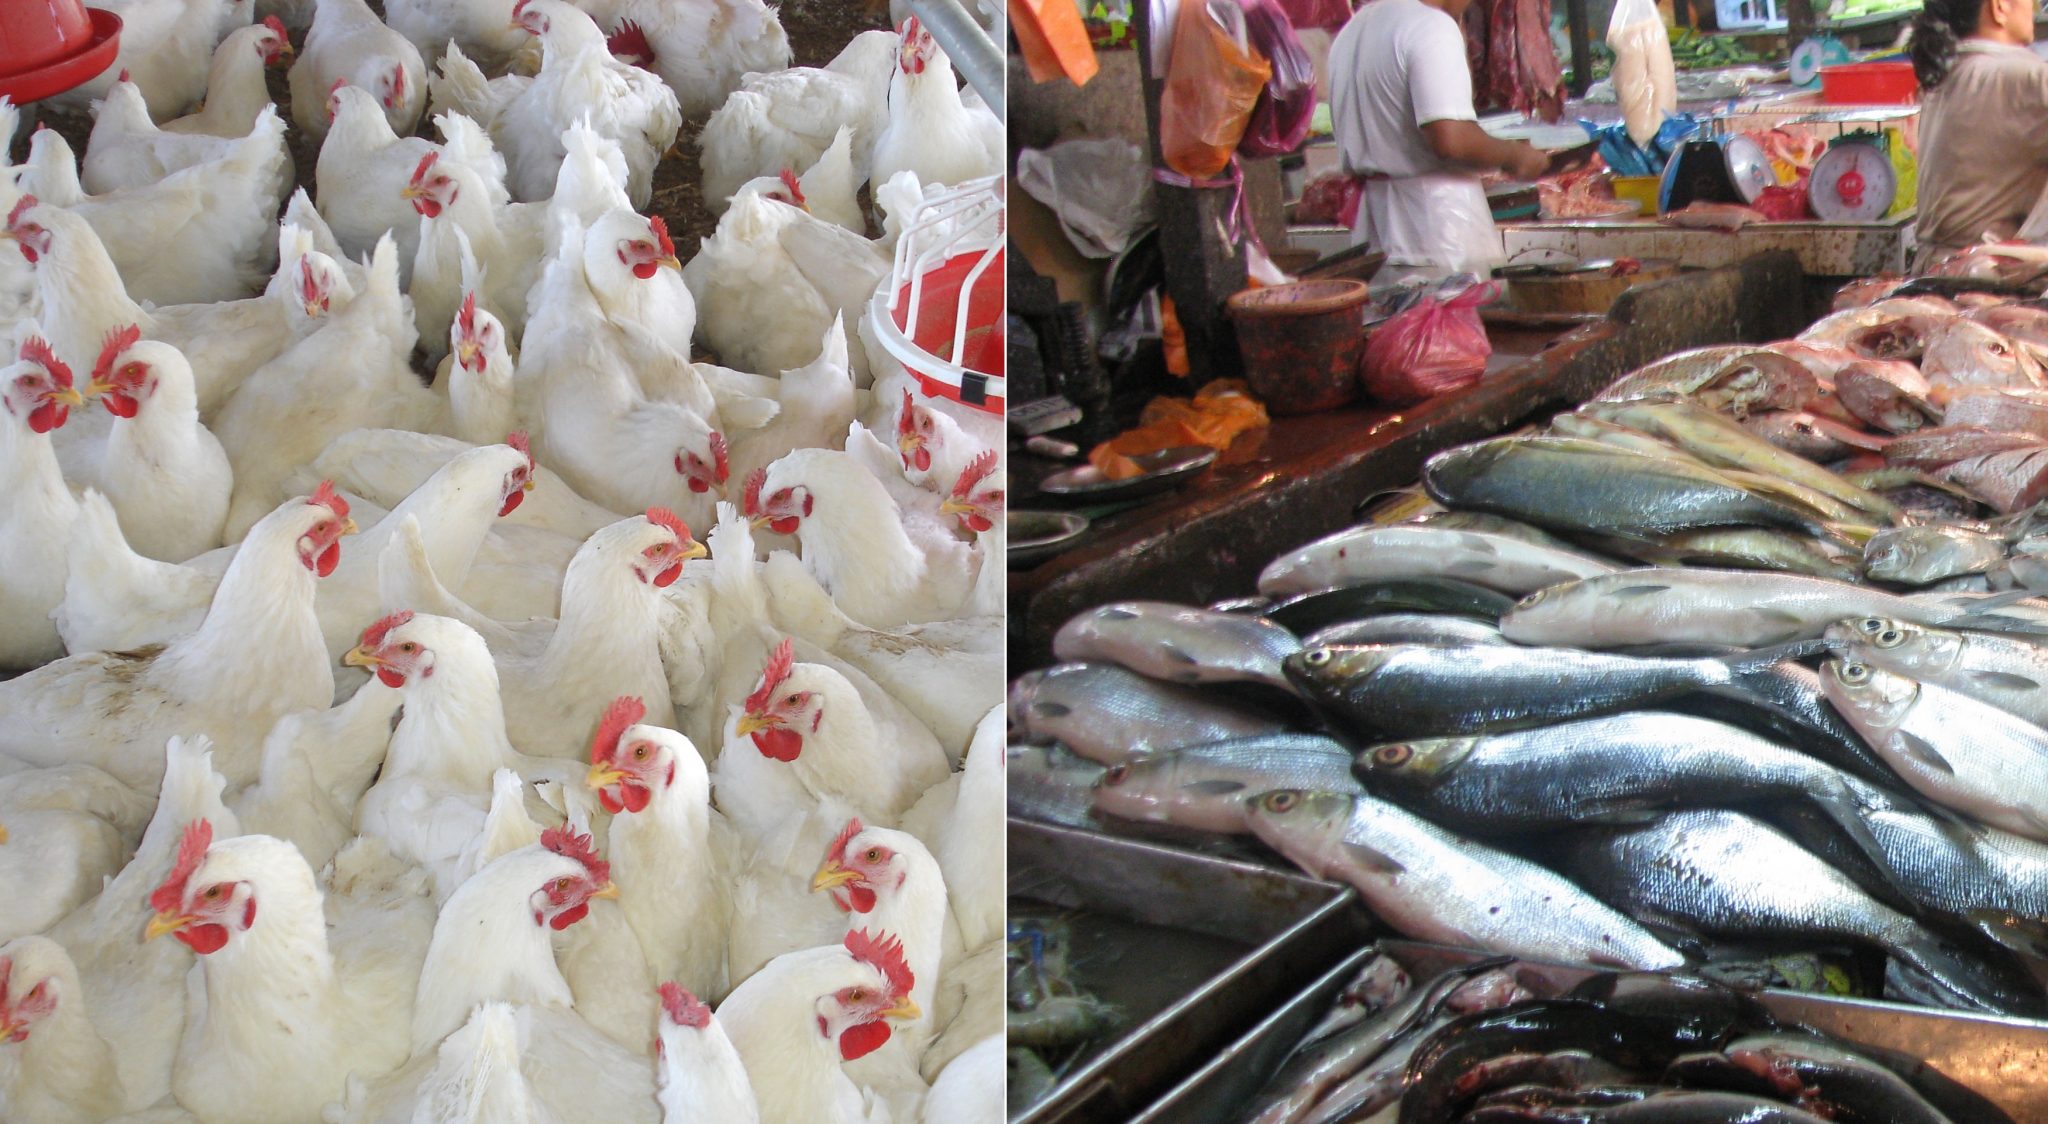   «شعب المواد الغذائية والأسماك والدواجن»: أسعارالمحروقات يرفع أسعار السلع